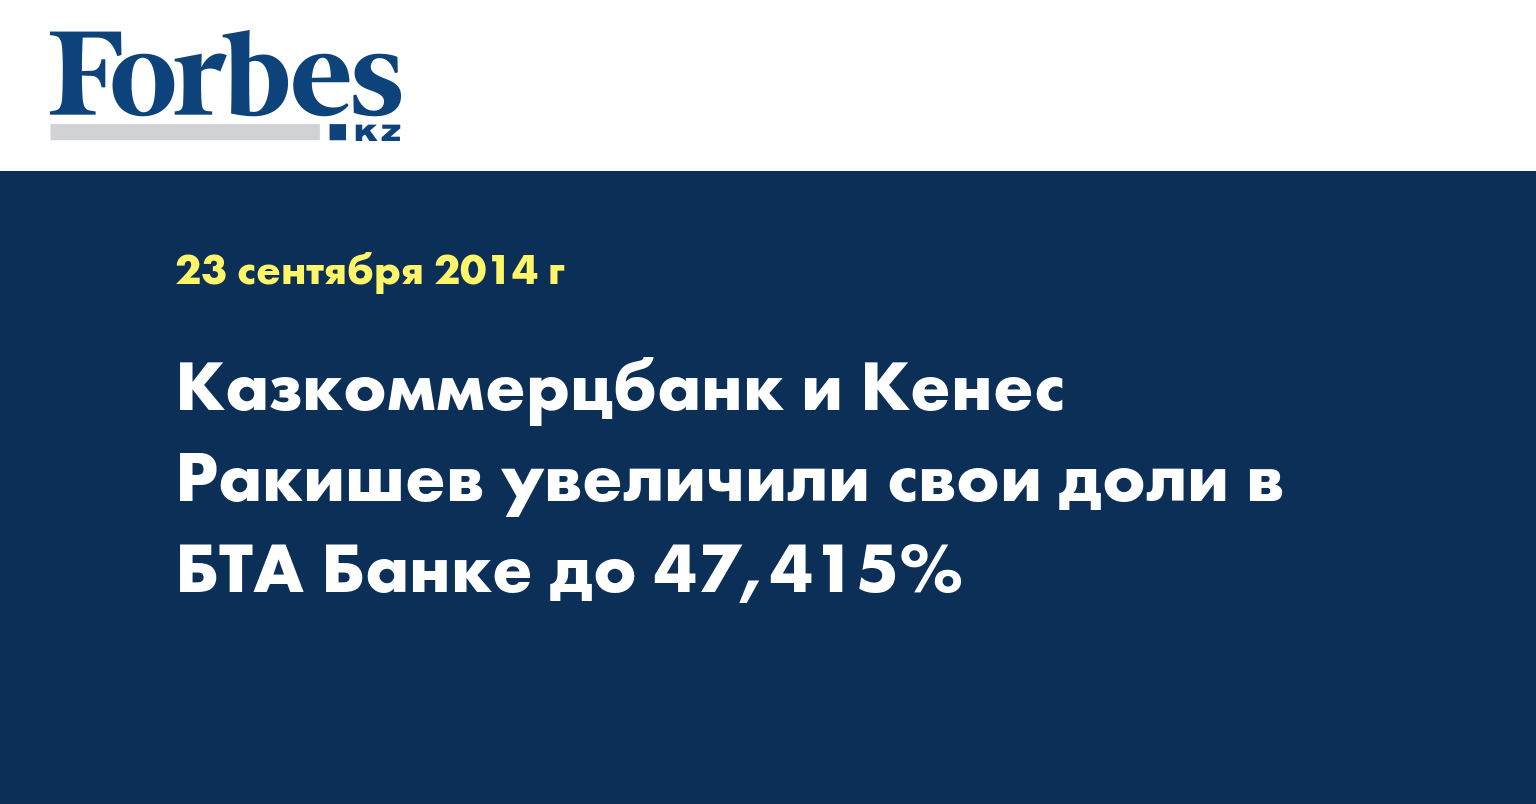 Казкоммерцбанк и Кенес Ракишев увеличили свои доли в БТА Банке до 47,415%